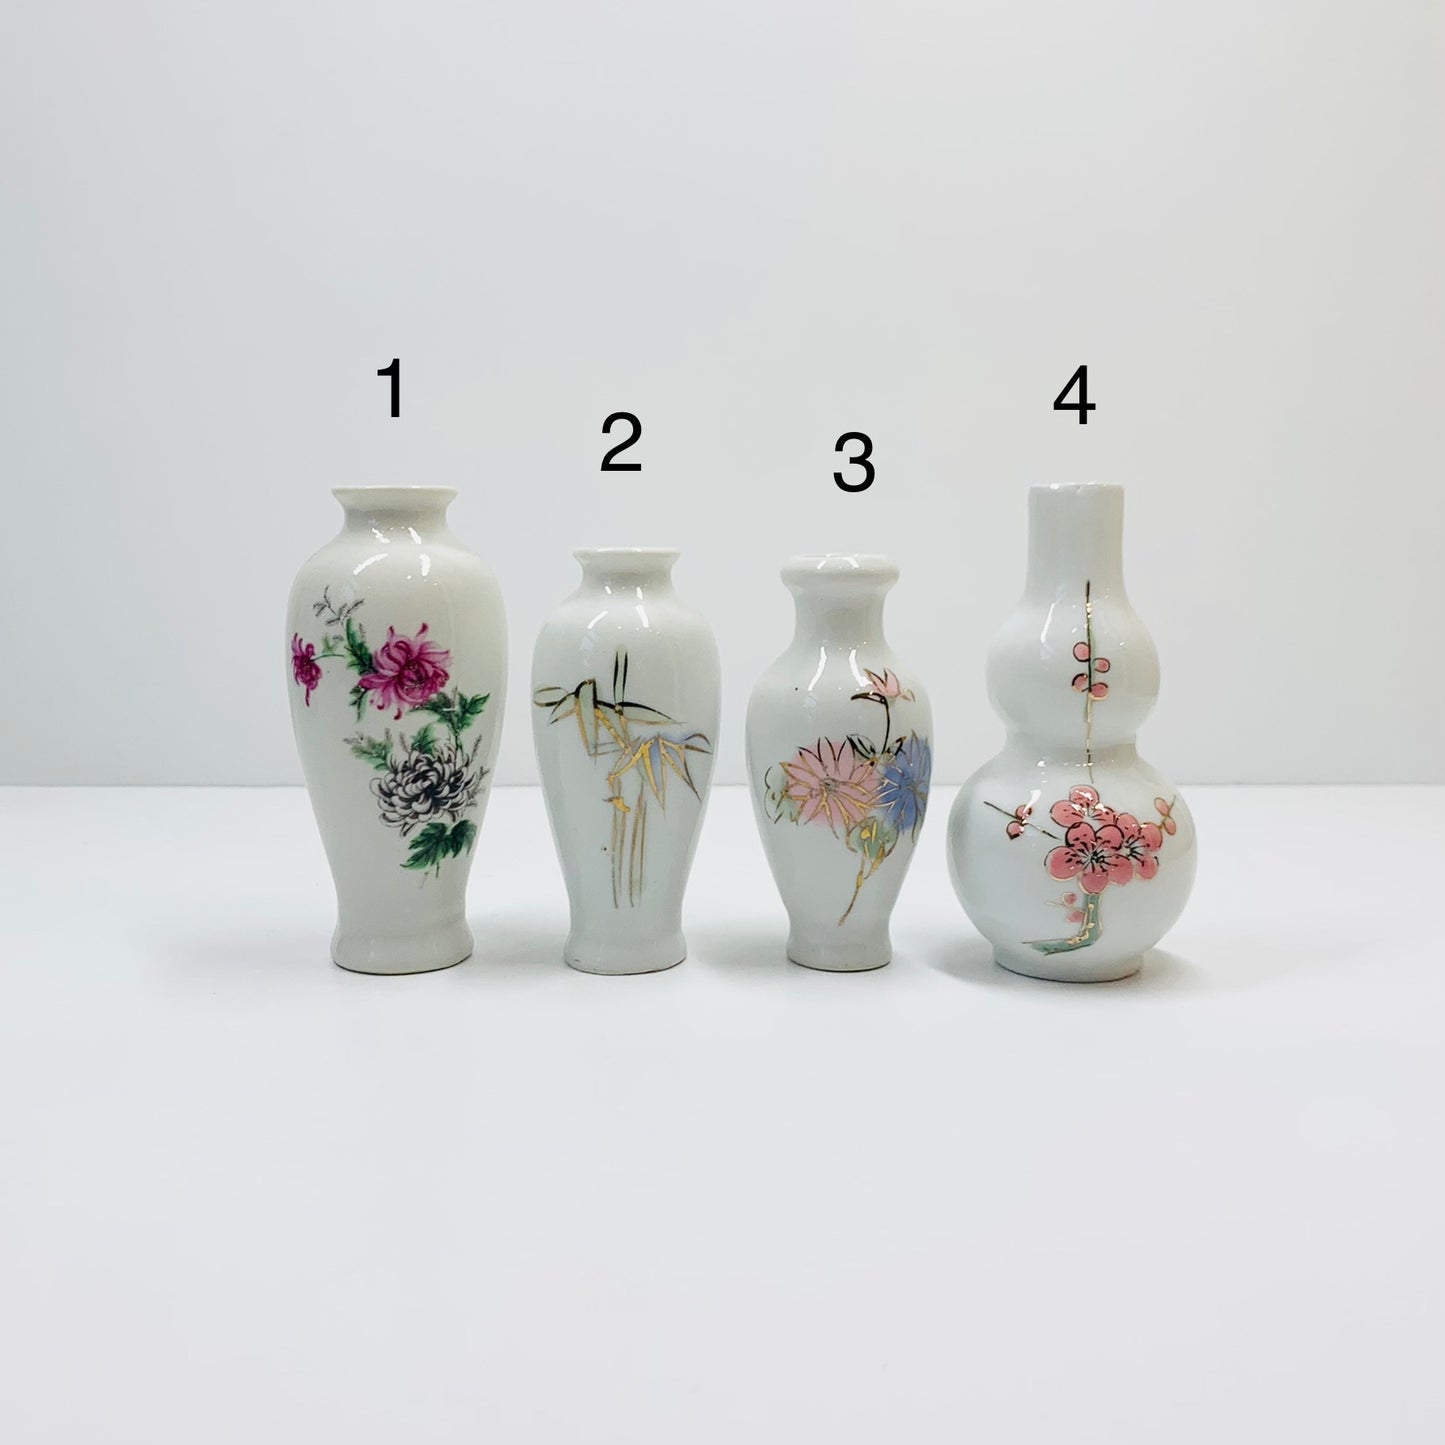 Vintage fine bone China miniature vase